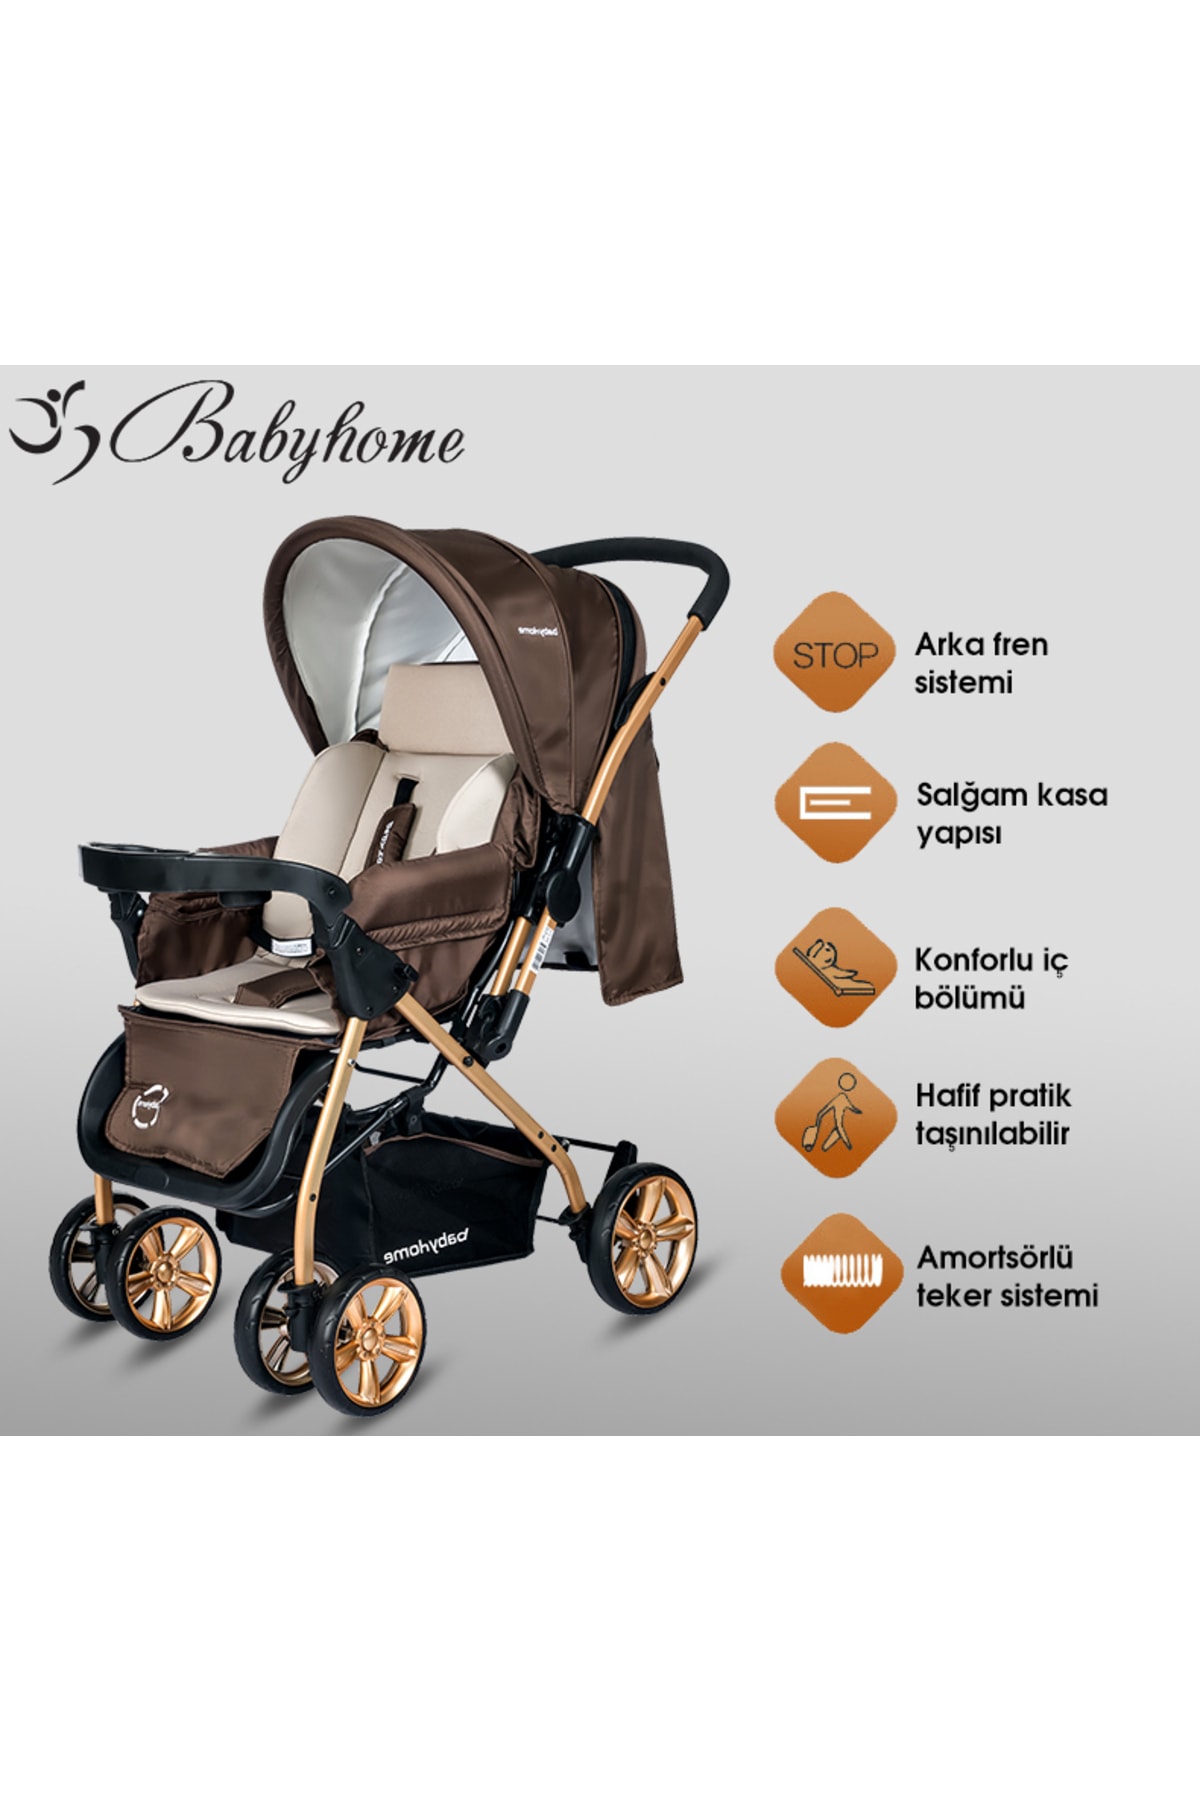 Baby Home Bh-760 Gold Bilyeli Teker Mama Tablalı Çift Yönlü Bebek Arabası NE10241